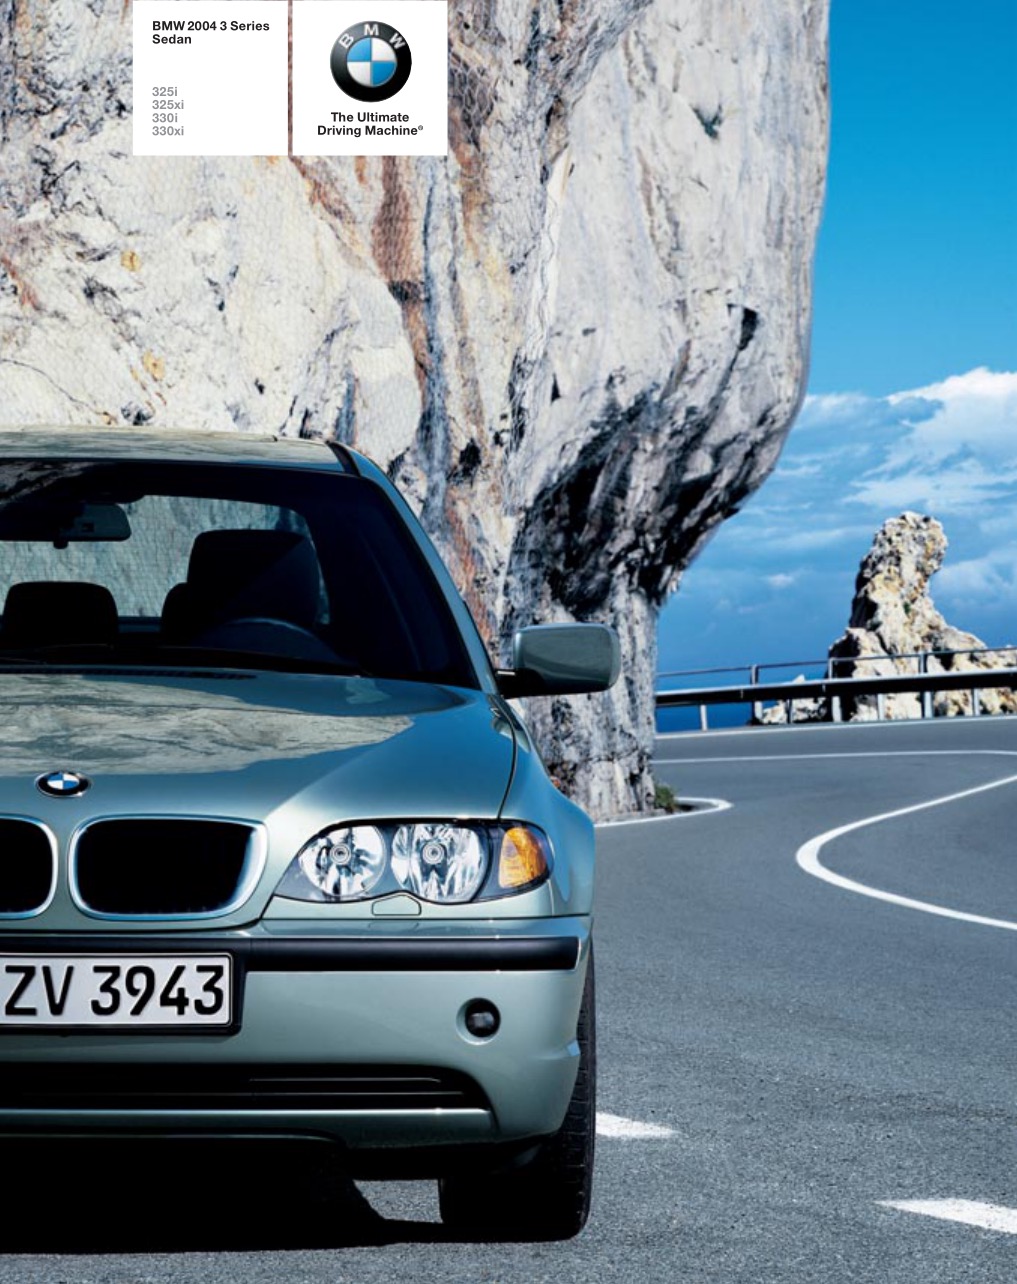 2004 BMW 3 Series Sedan Brochure Page 11